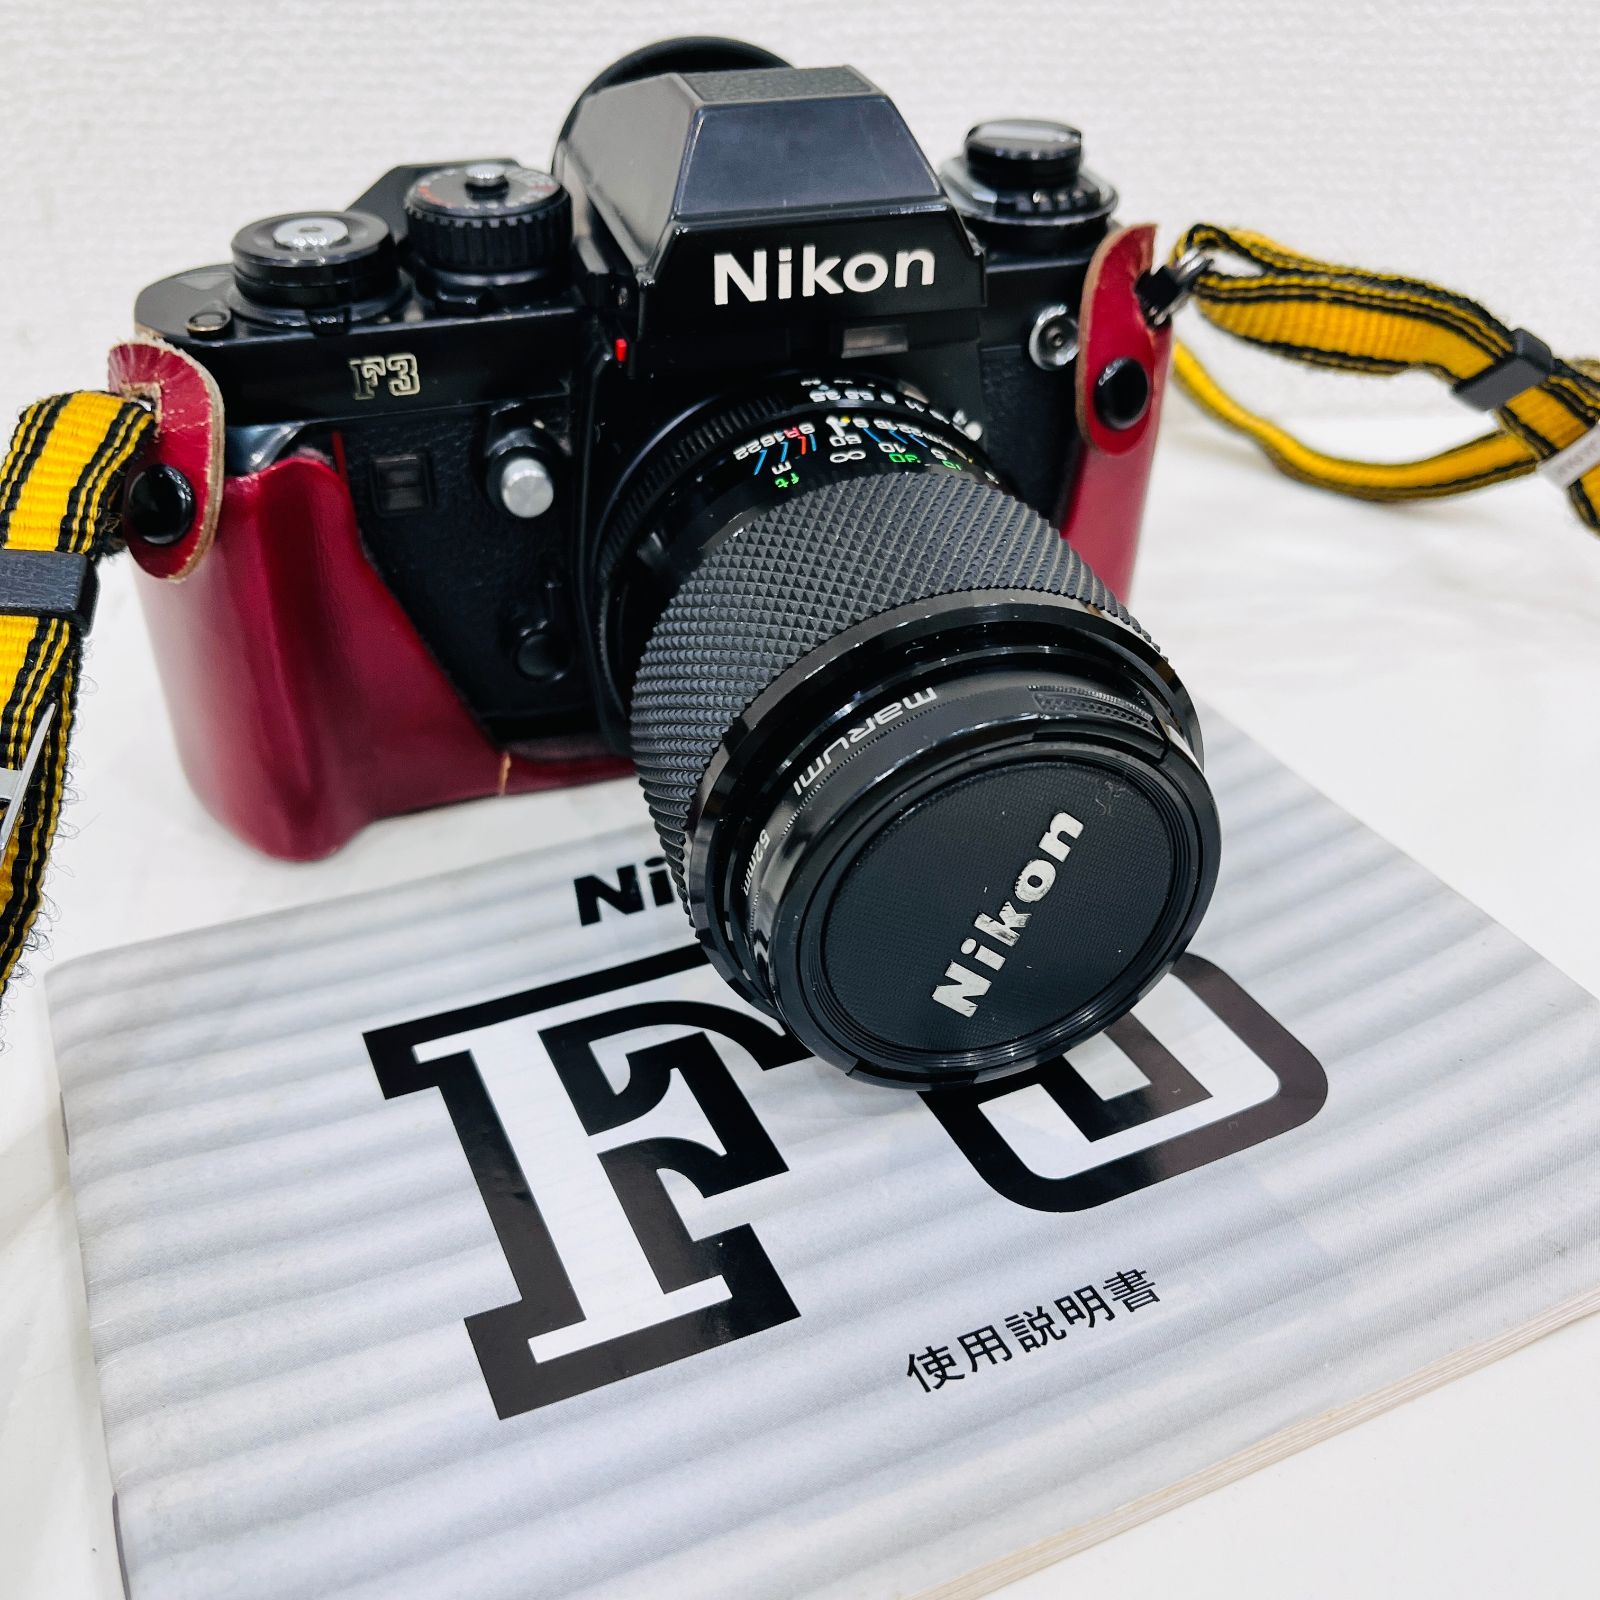 A 【ジャンク】Nikon ニコン F3 フィルムカメラ カメラ TAIKOR レンズ